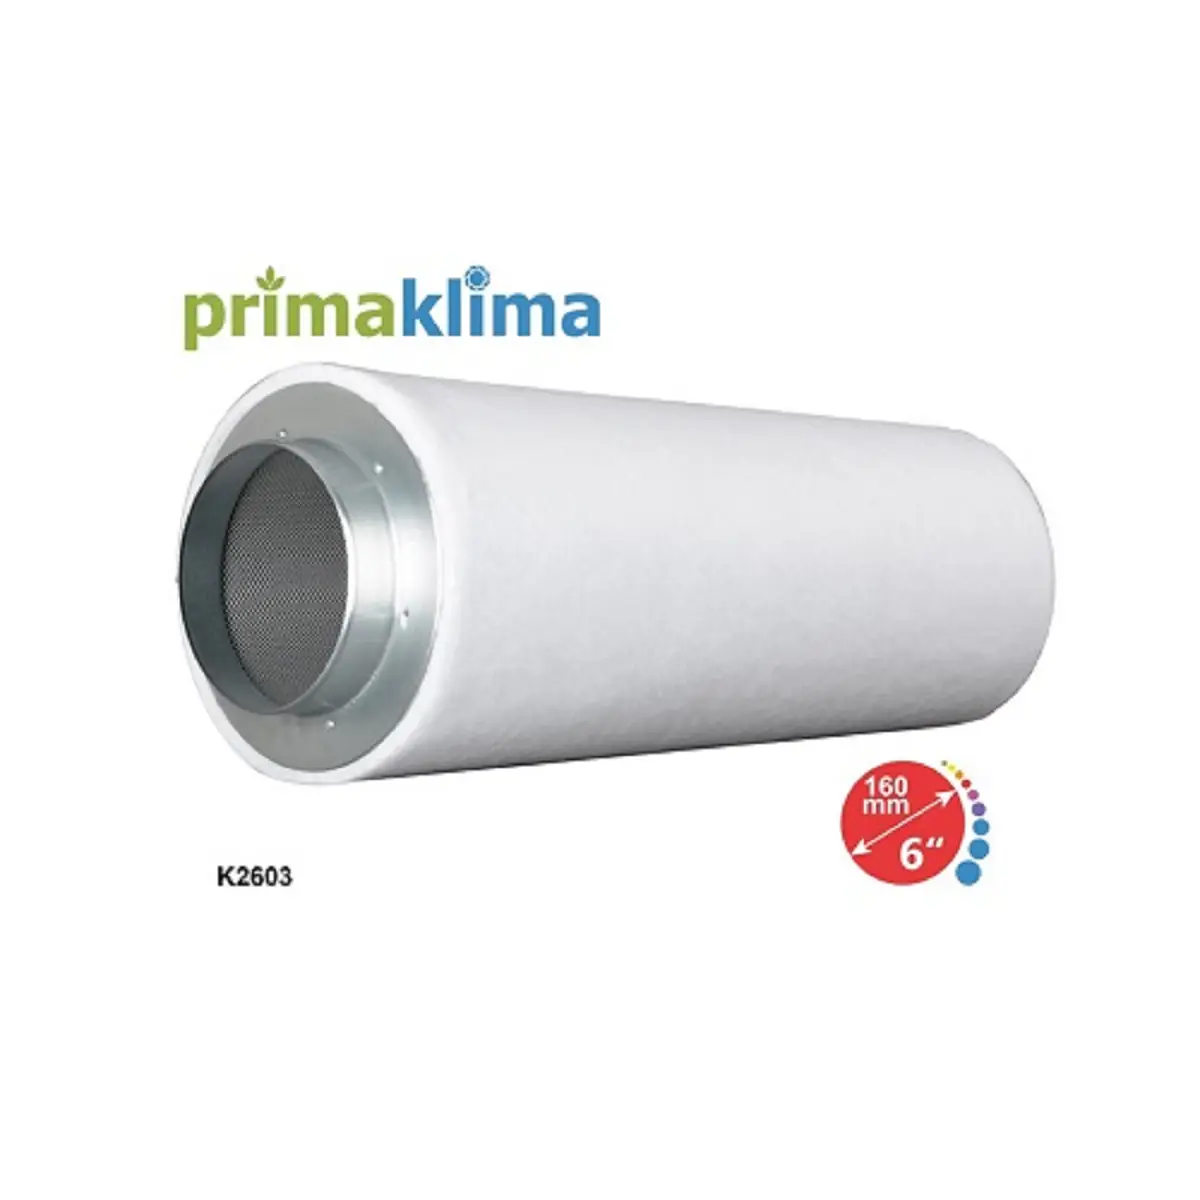 Le filtre à charbon Prima Klima Ecoline 2603 150mm